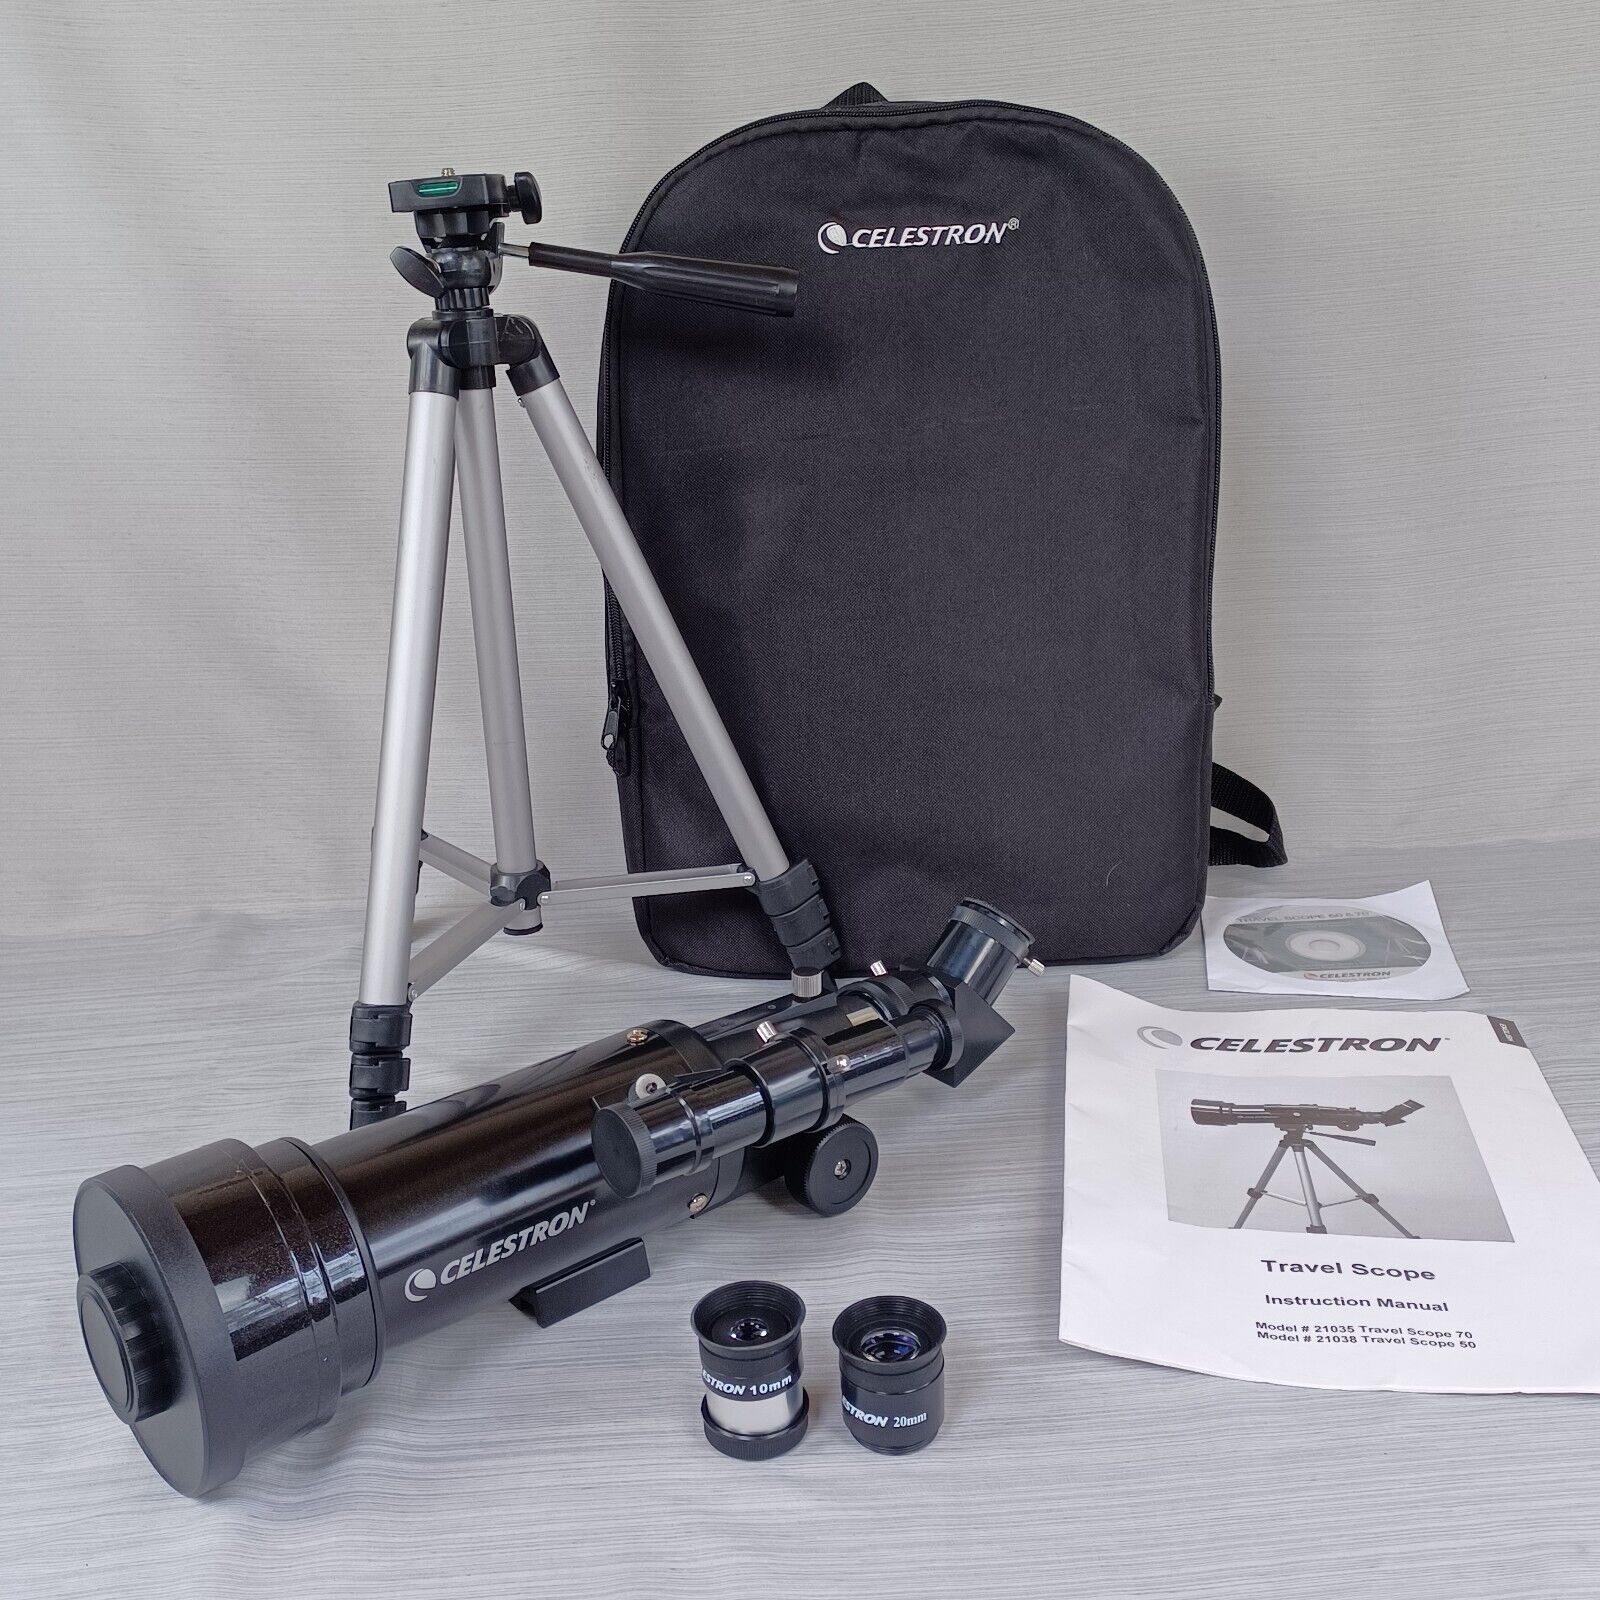 Celestron Travel Telescope D70/F400 Model 21035 Tripod 10-20mm Lens & Backpack